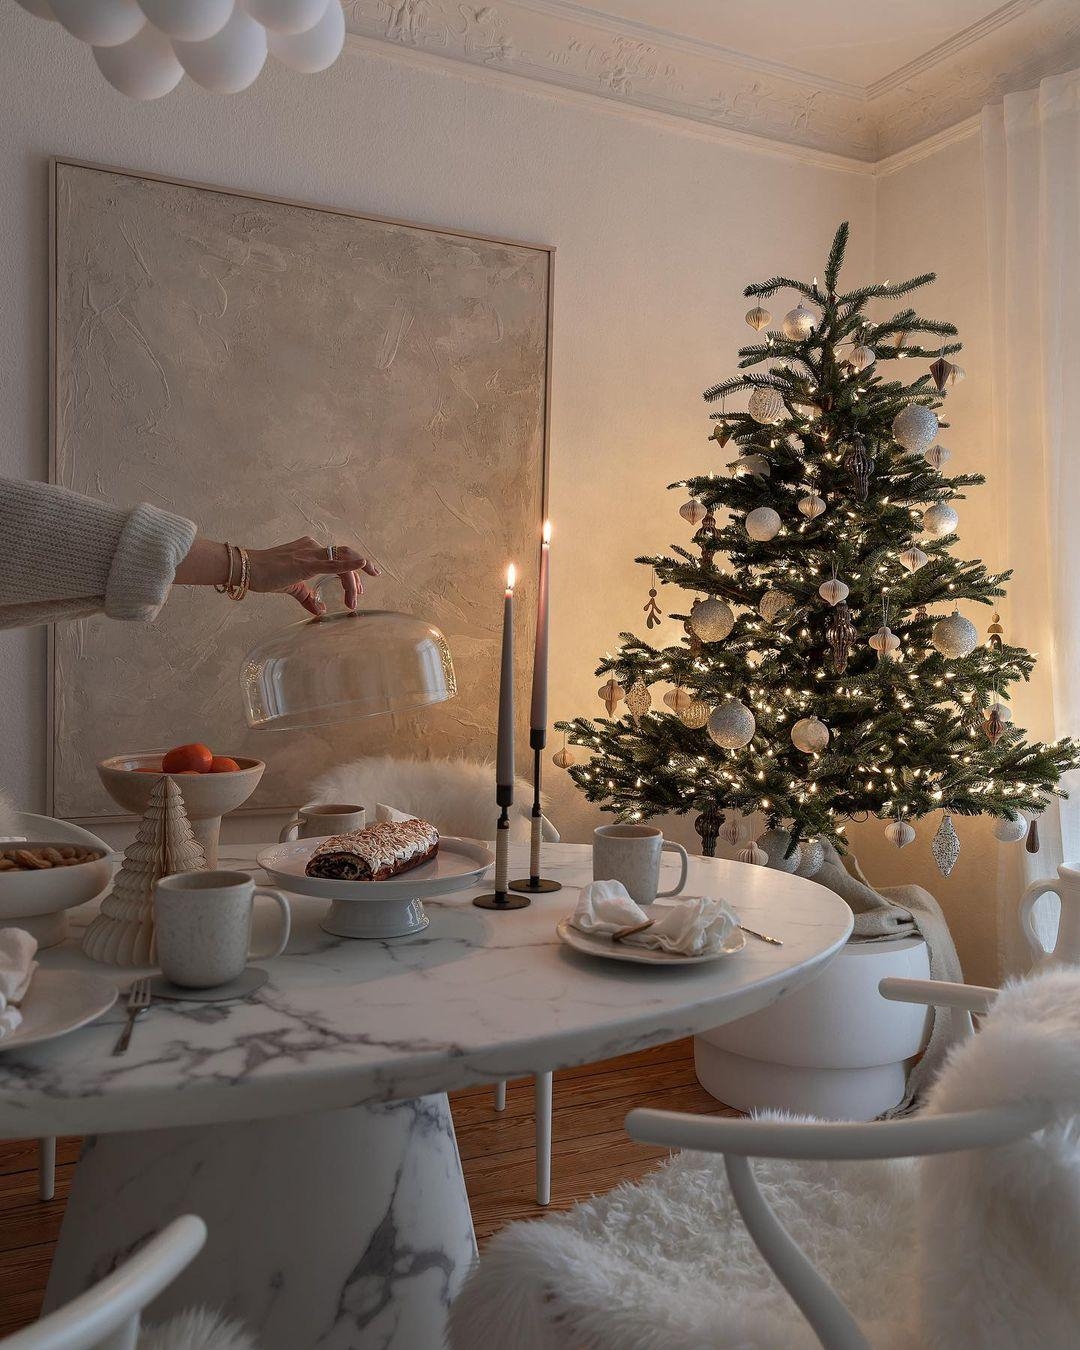 Steht bei euch auch schon der #Weihnachtsbaum?🌲

#xmas #christmas #deko #weihnachten #winter #kuchen #backen #esszimmer